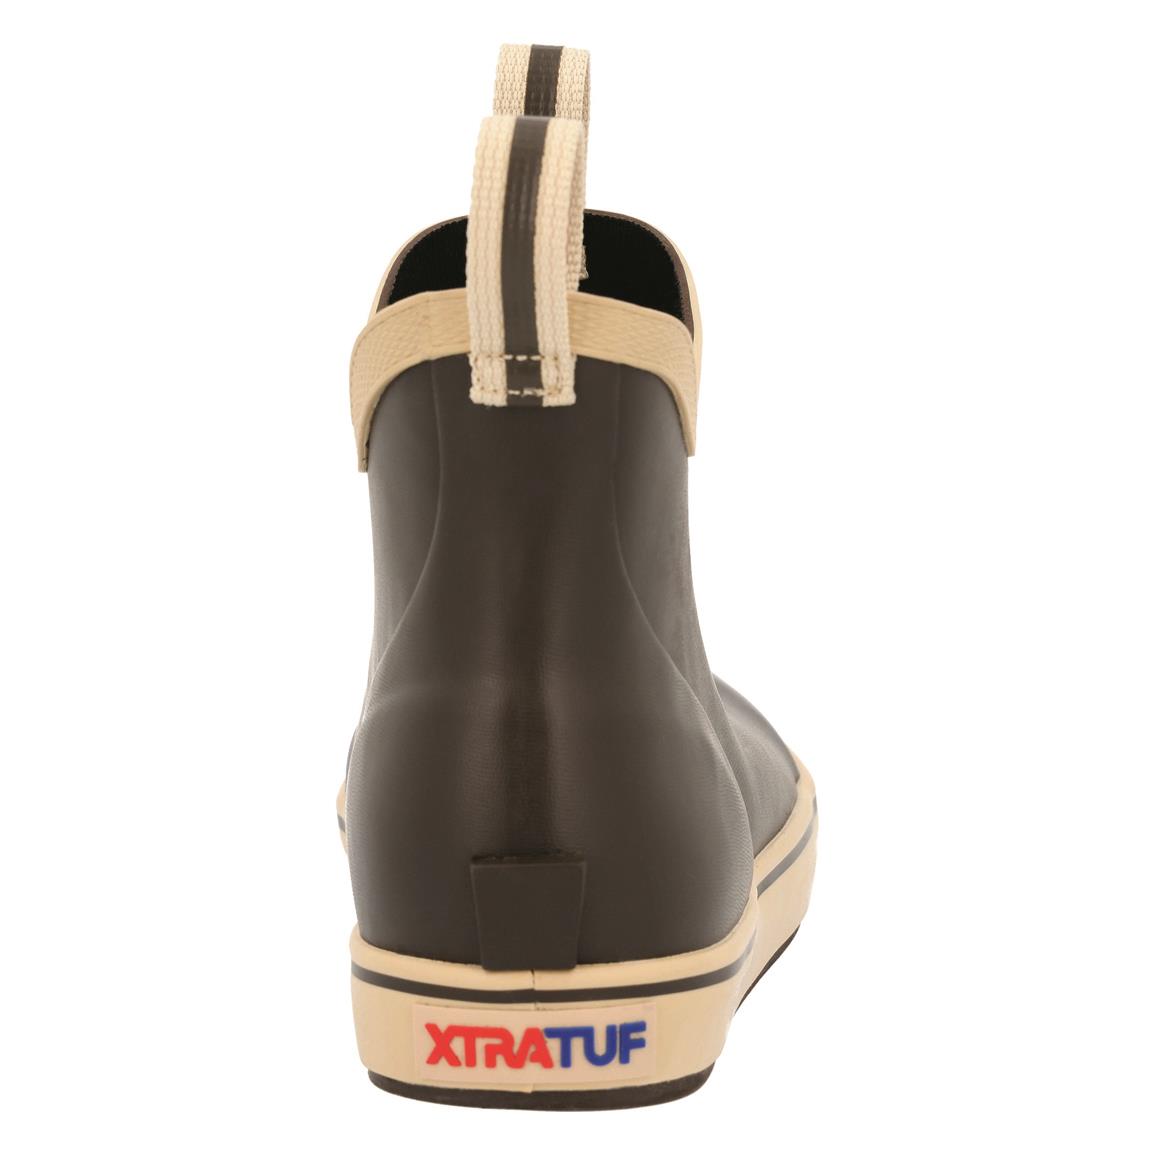 Xtratuf Boots | Sportsman's Guide